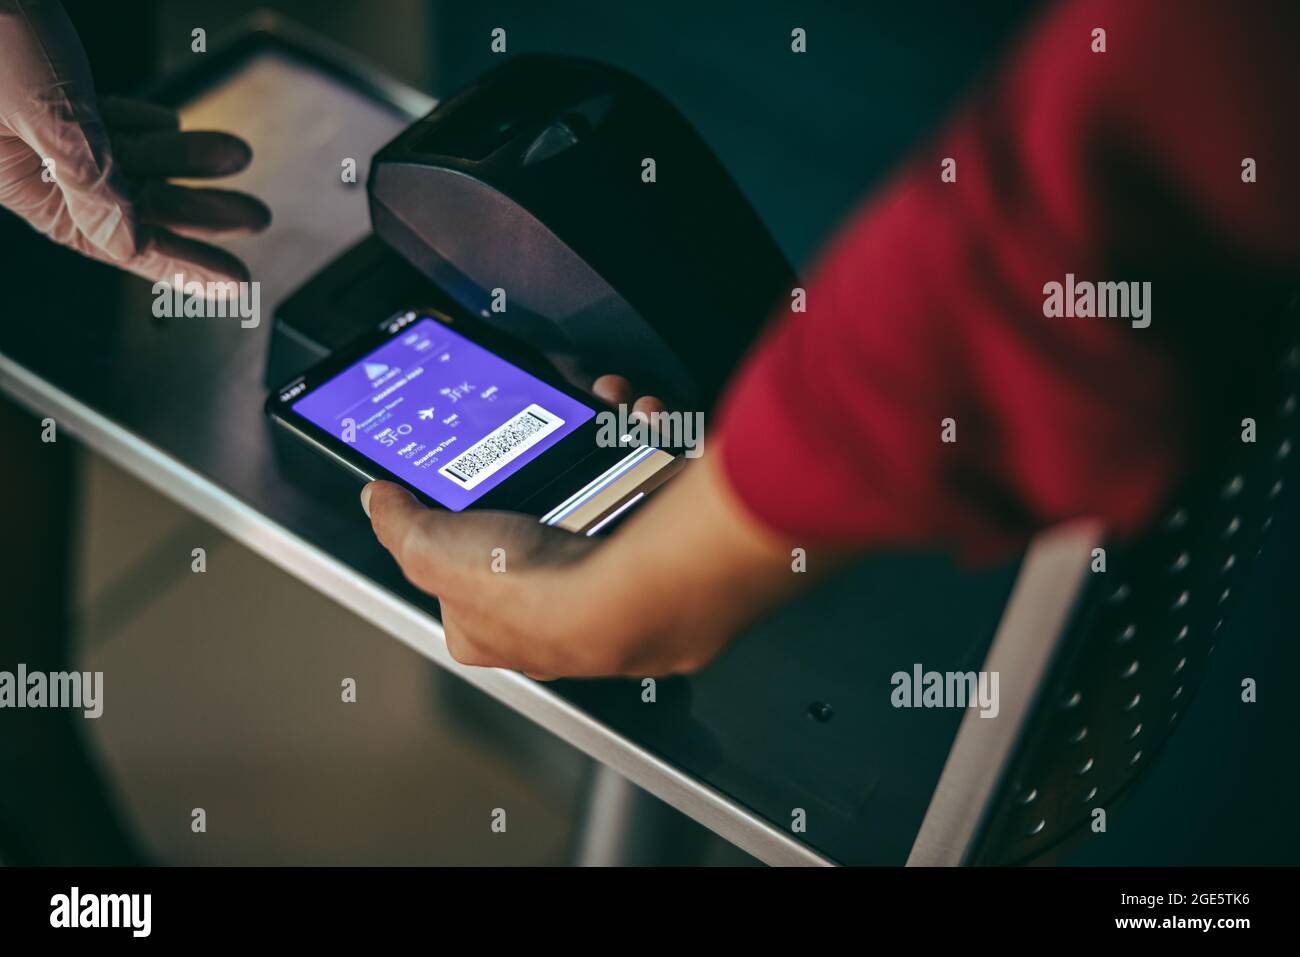 Une femme méconnaissable scanne un smartphone à l'arrivée à l'aéroport. Numérisation numérique sur la carte d'embarquement au comptoir d'enregistrement de l'aéroport. Banque D'Images